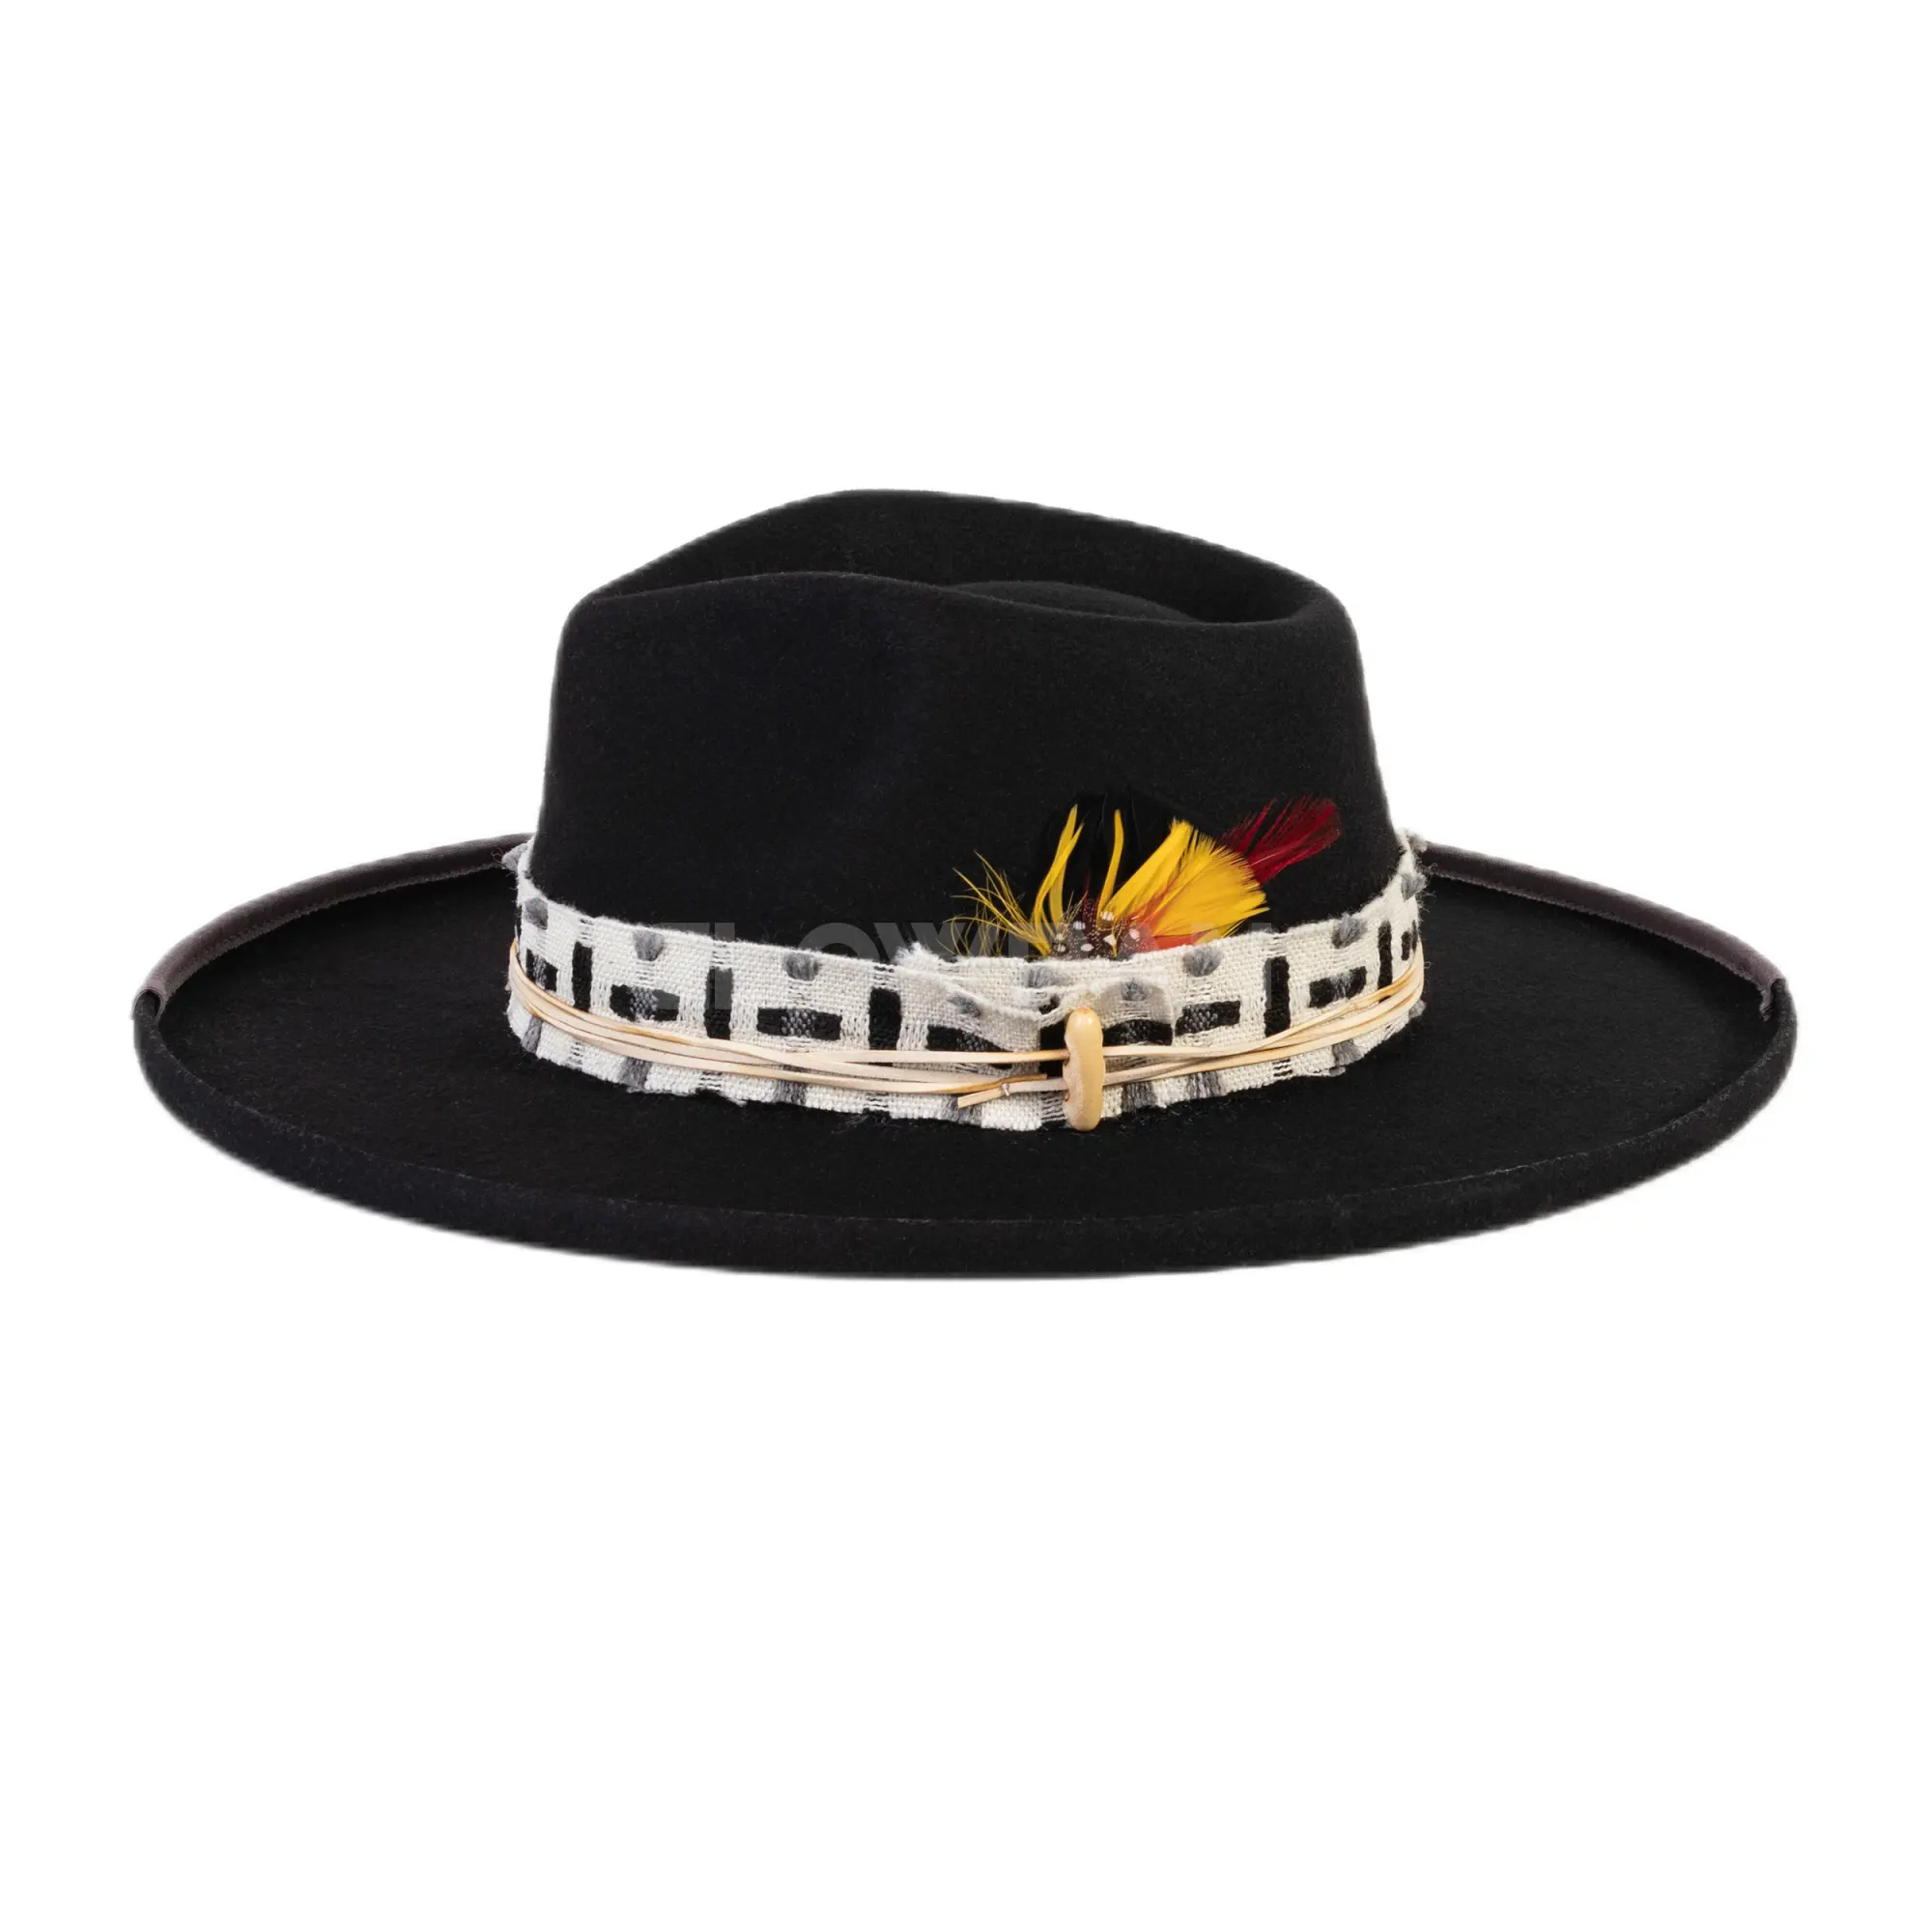 Toptan yeni geniş ağız moda Vintage yün fötr şapka kalem ağız tüy şapka Unisex